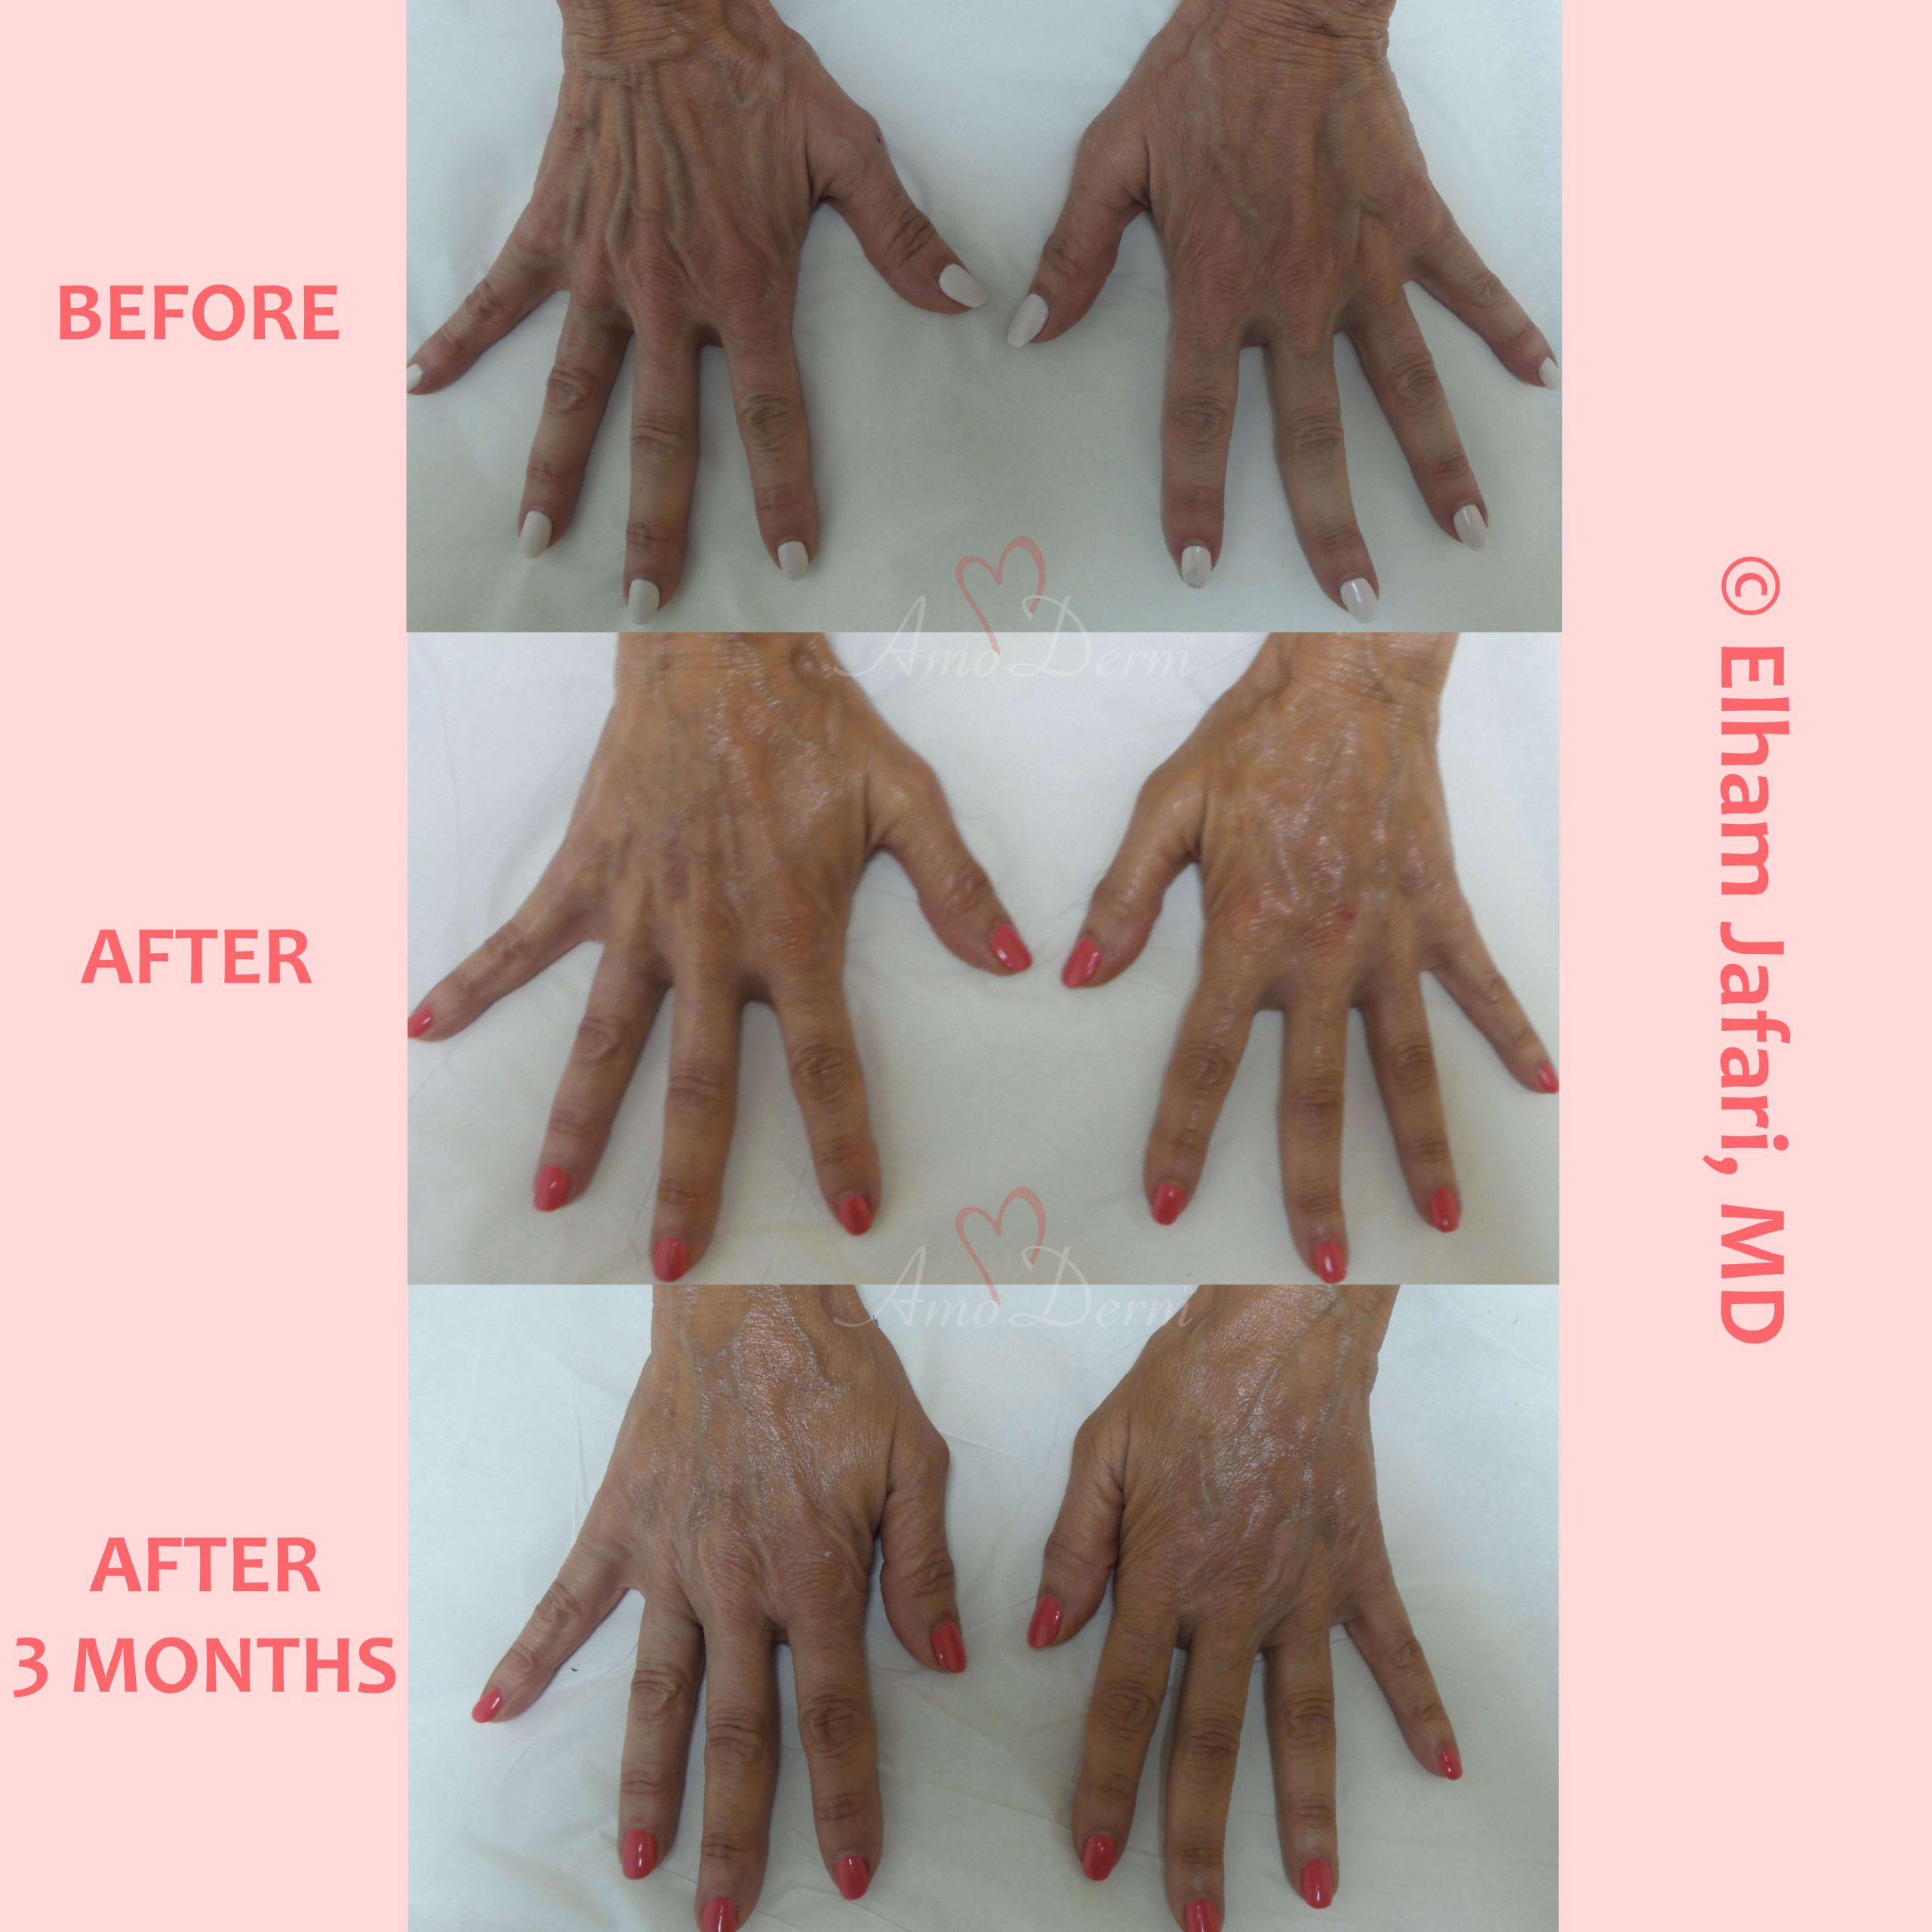 Hand rejuvenation with dermal filler injection